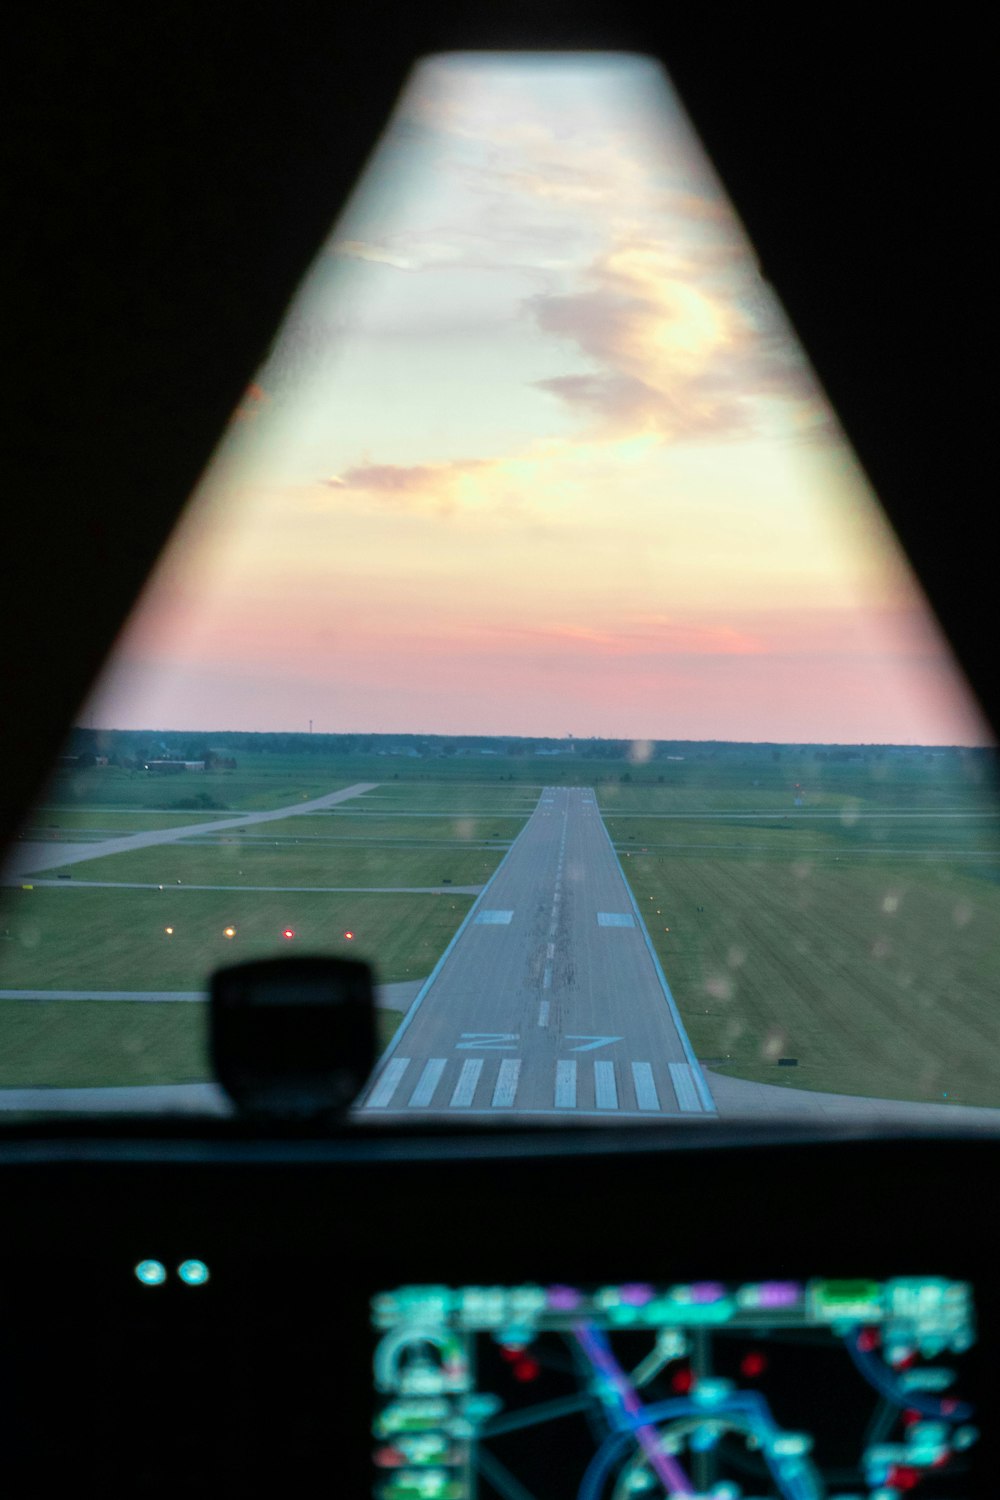 Una vista de una pista desde el interior de un avión